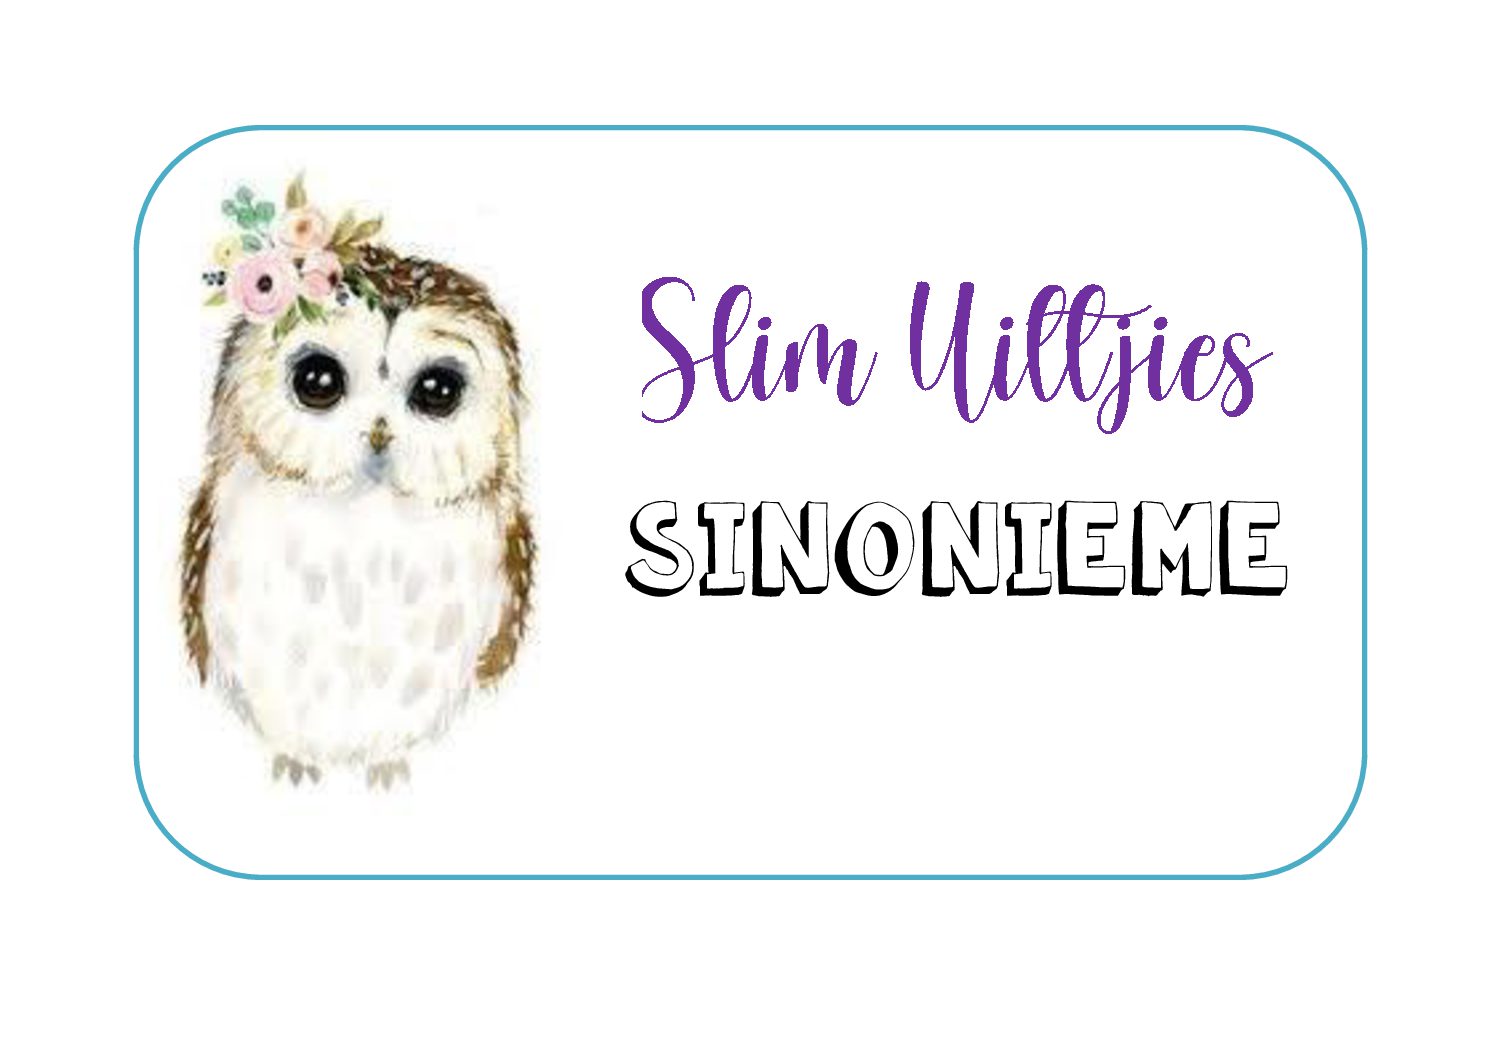 Sinonieme - Slim Uiltjies - 1